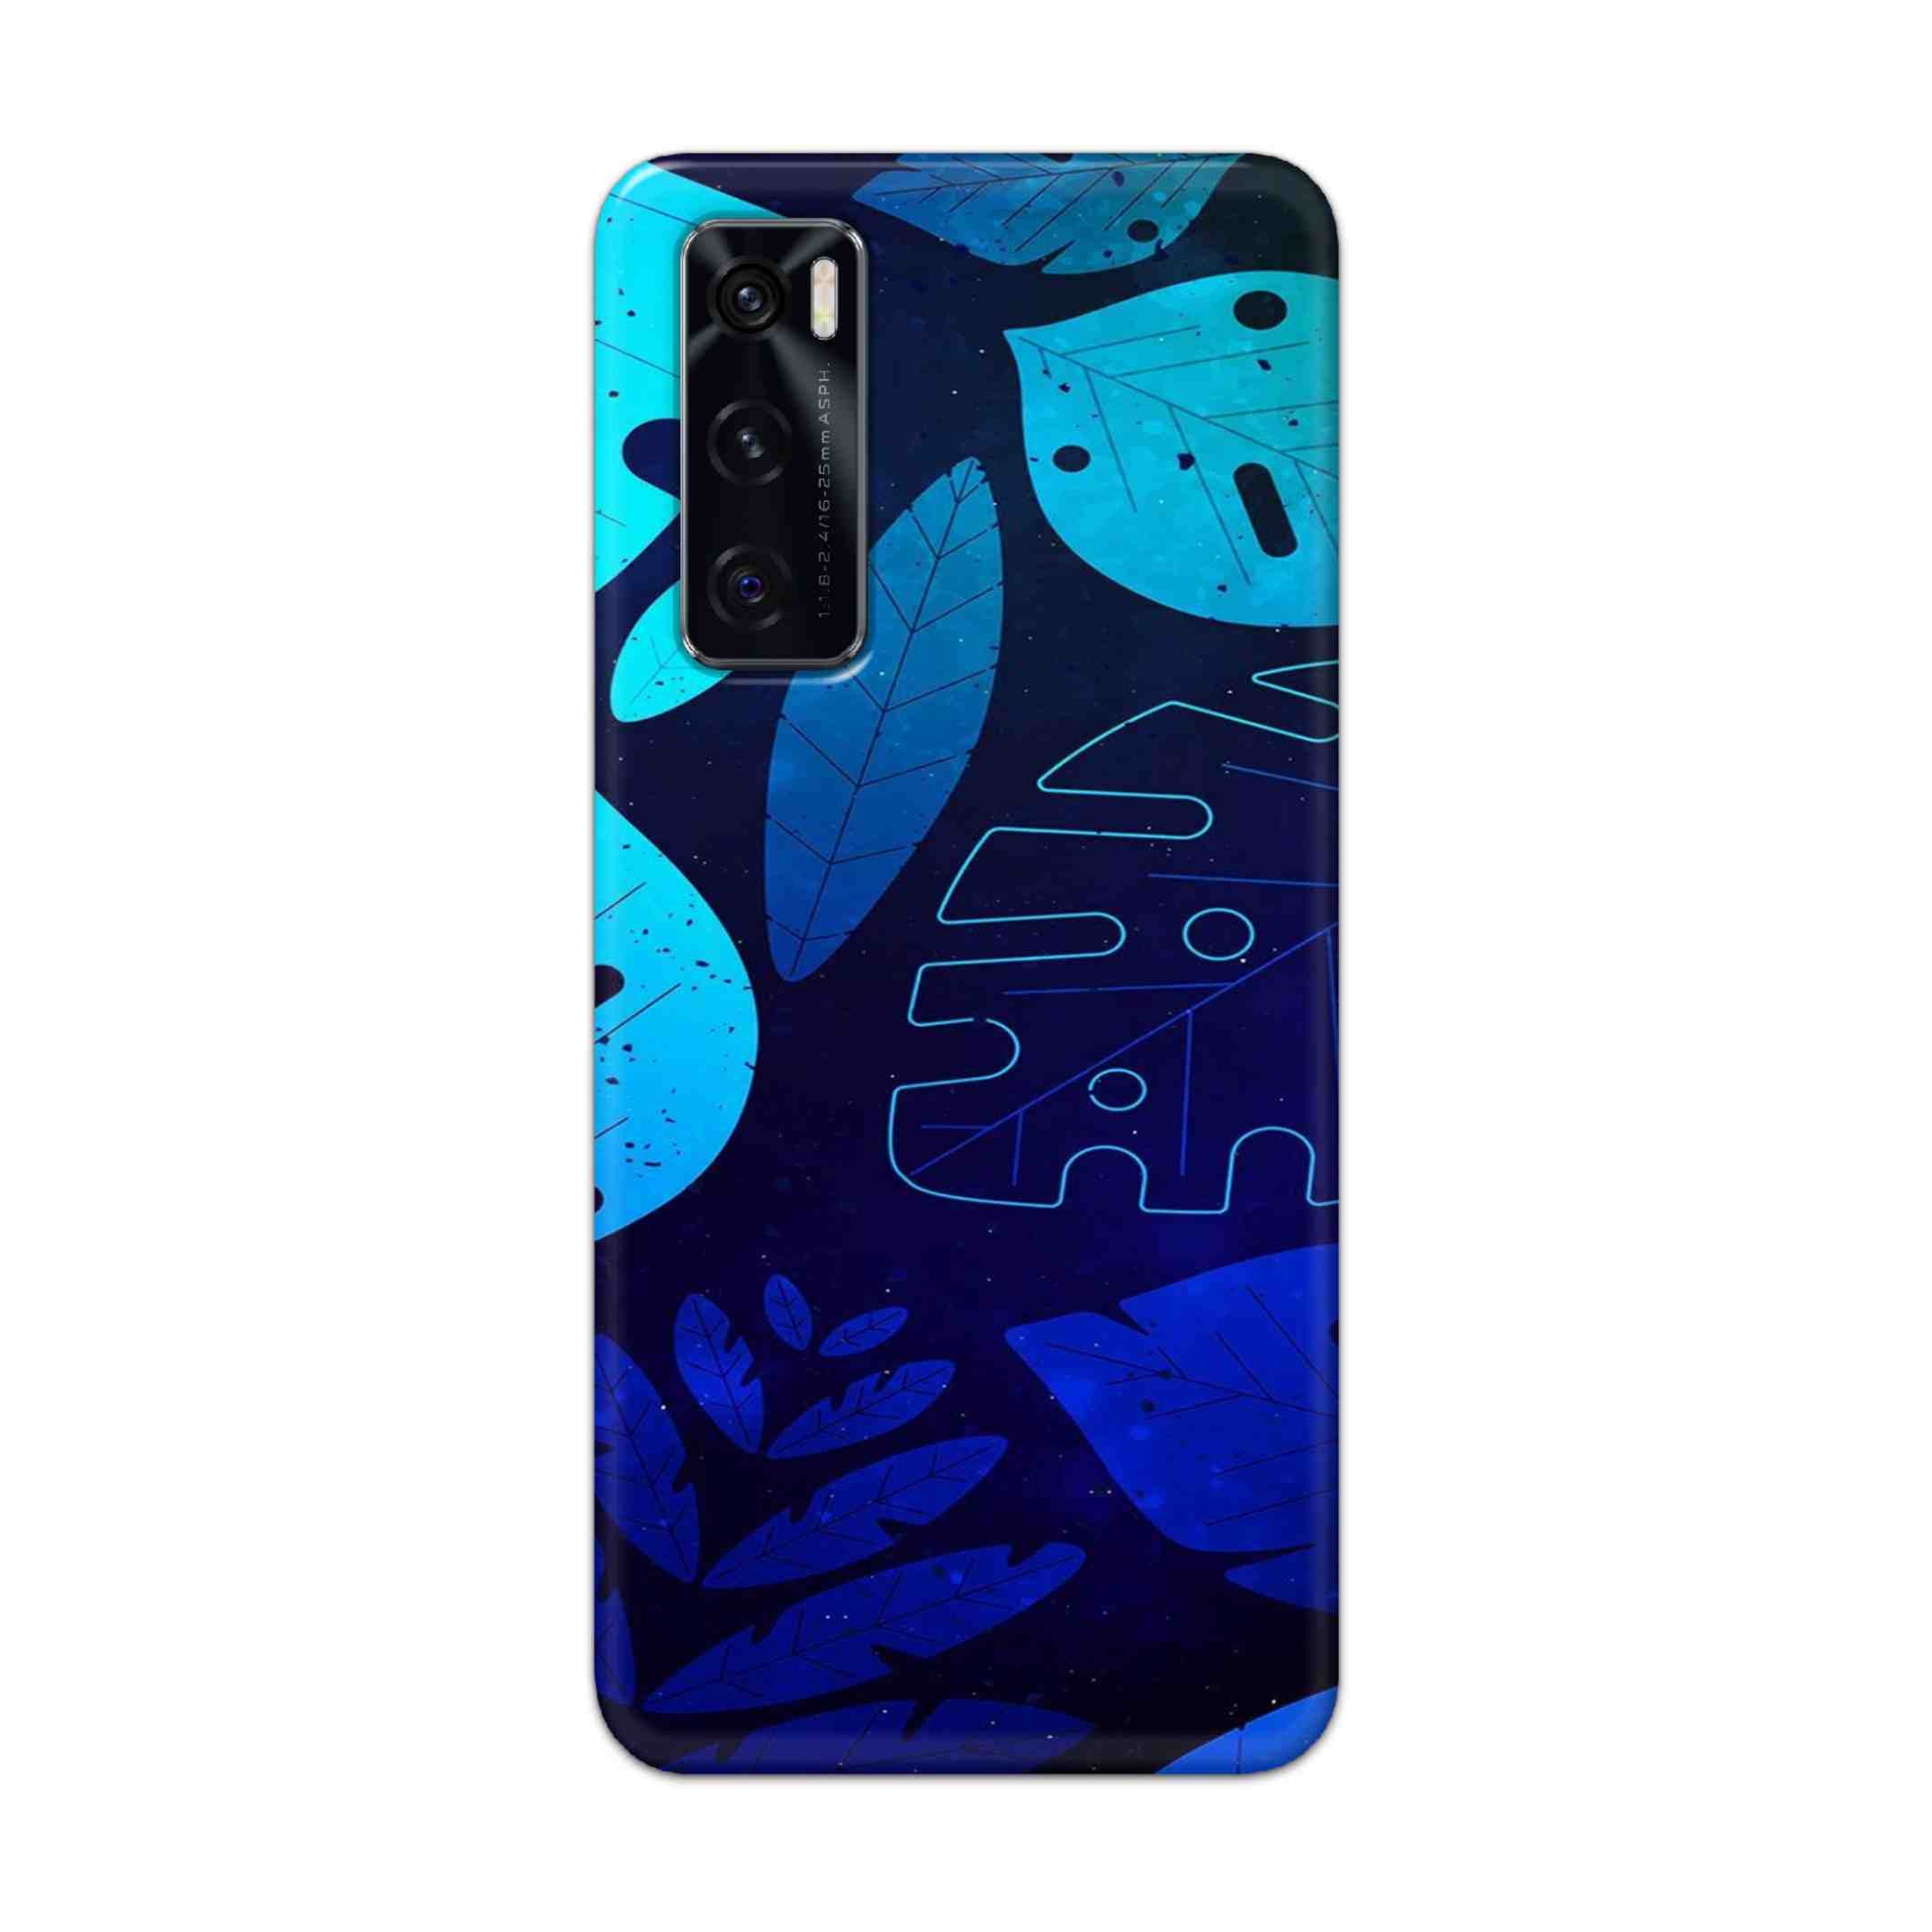 Buy Neon Leaf Hard Back Mobile Phone Case Cover For Vivo V20 SE Online